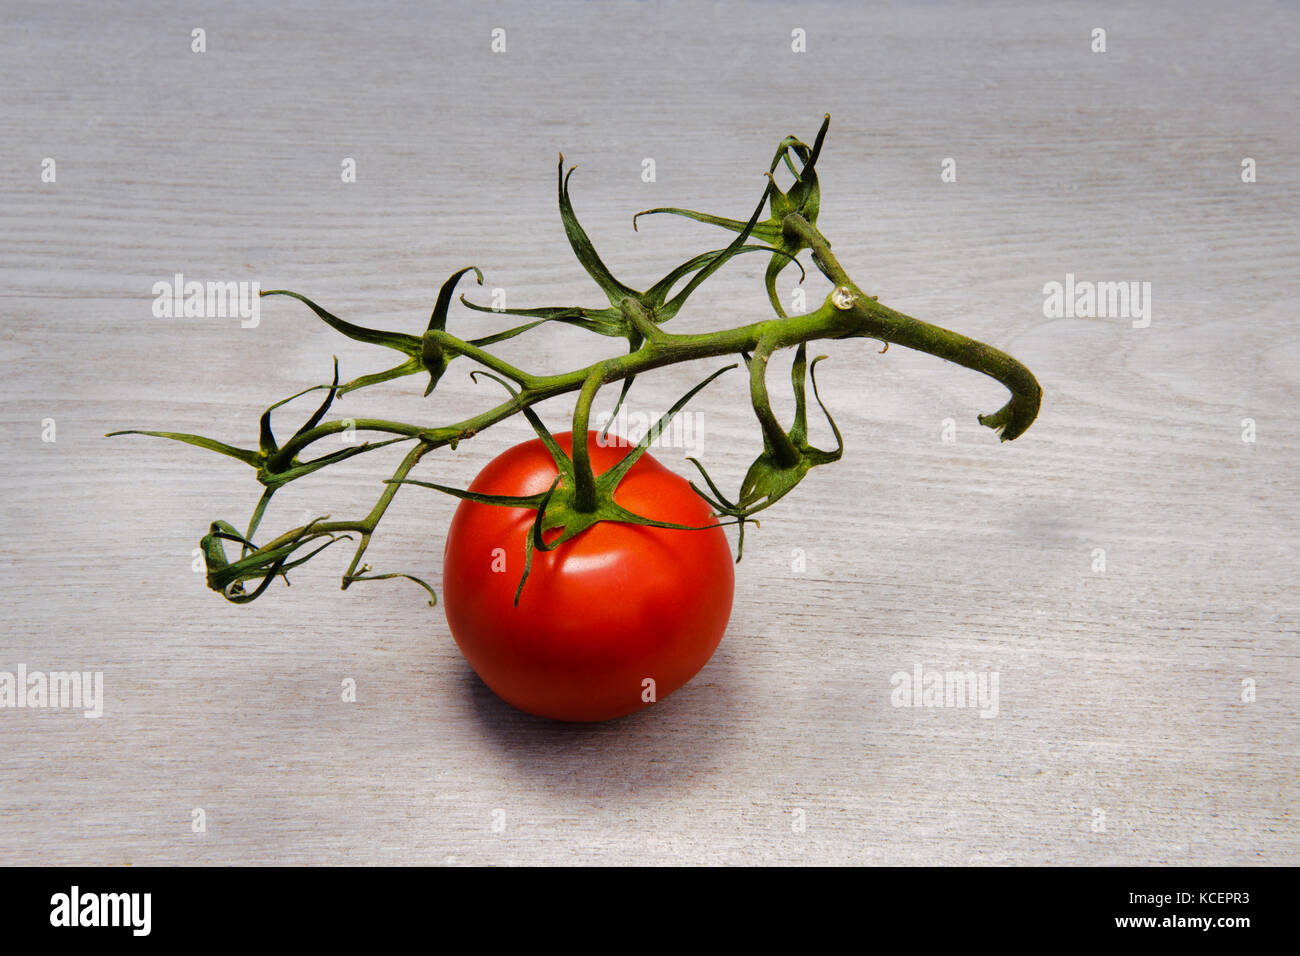 Últimas tomate adjunta a la vid. Compradas en un supermercado. La vid está empezando hacer secar y se marchitan, pero la última tomate es todavía fresca. Foto de stock